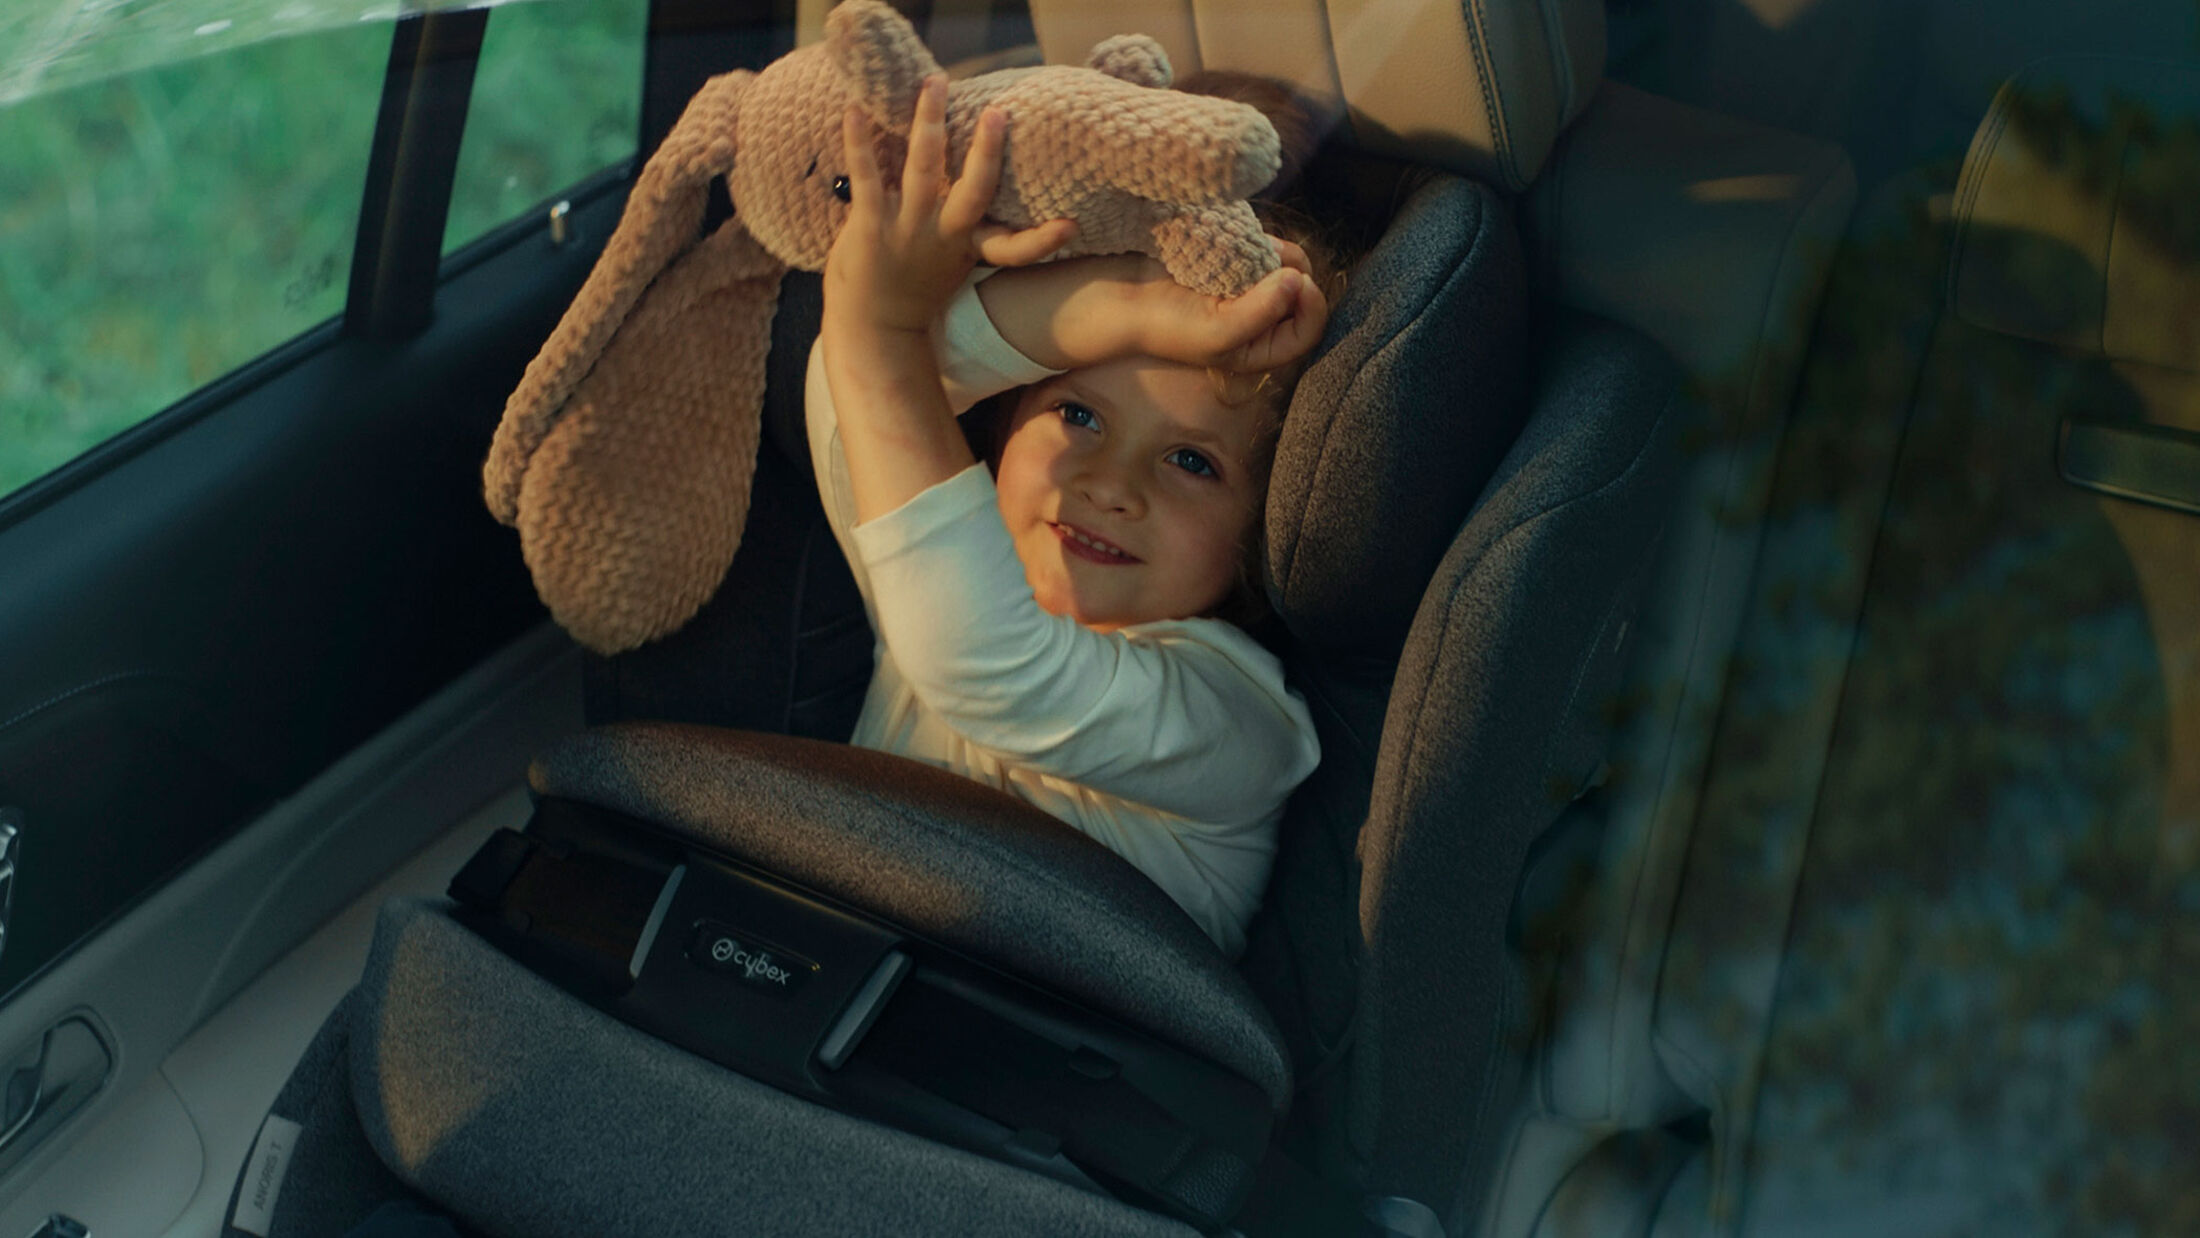 Autokindersitze im Test: So fährt Ihr Kind sicher mit